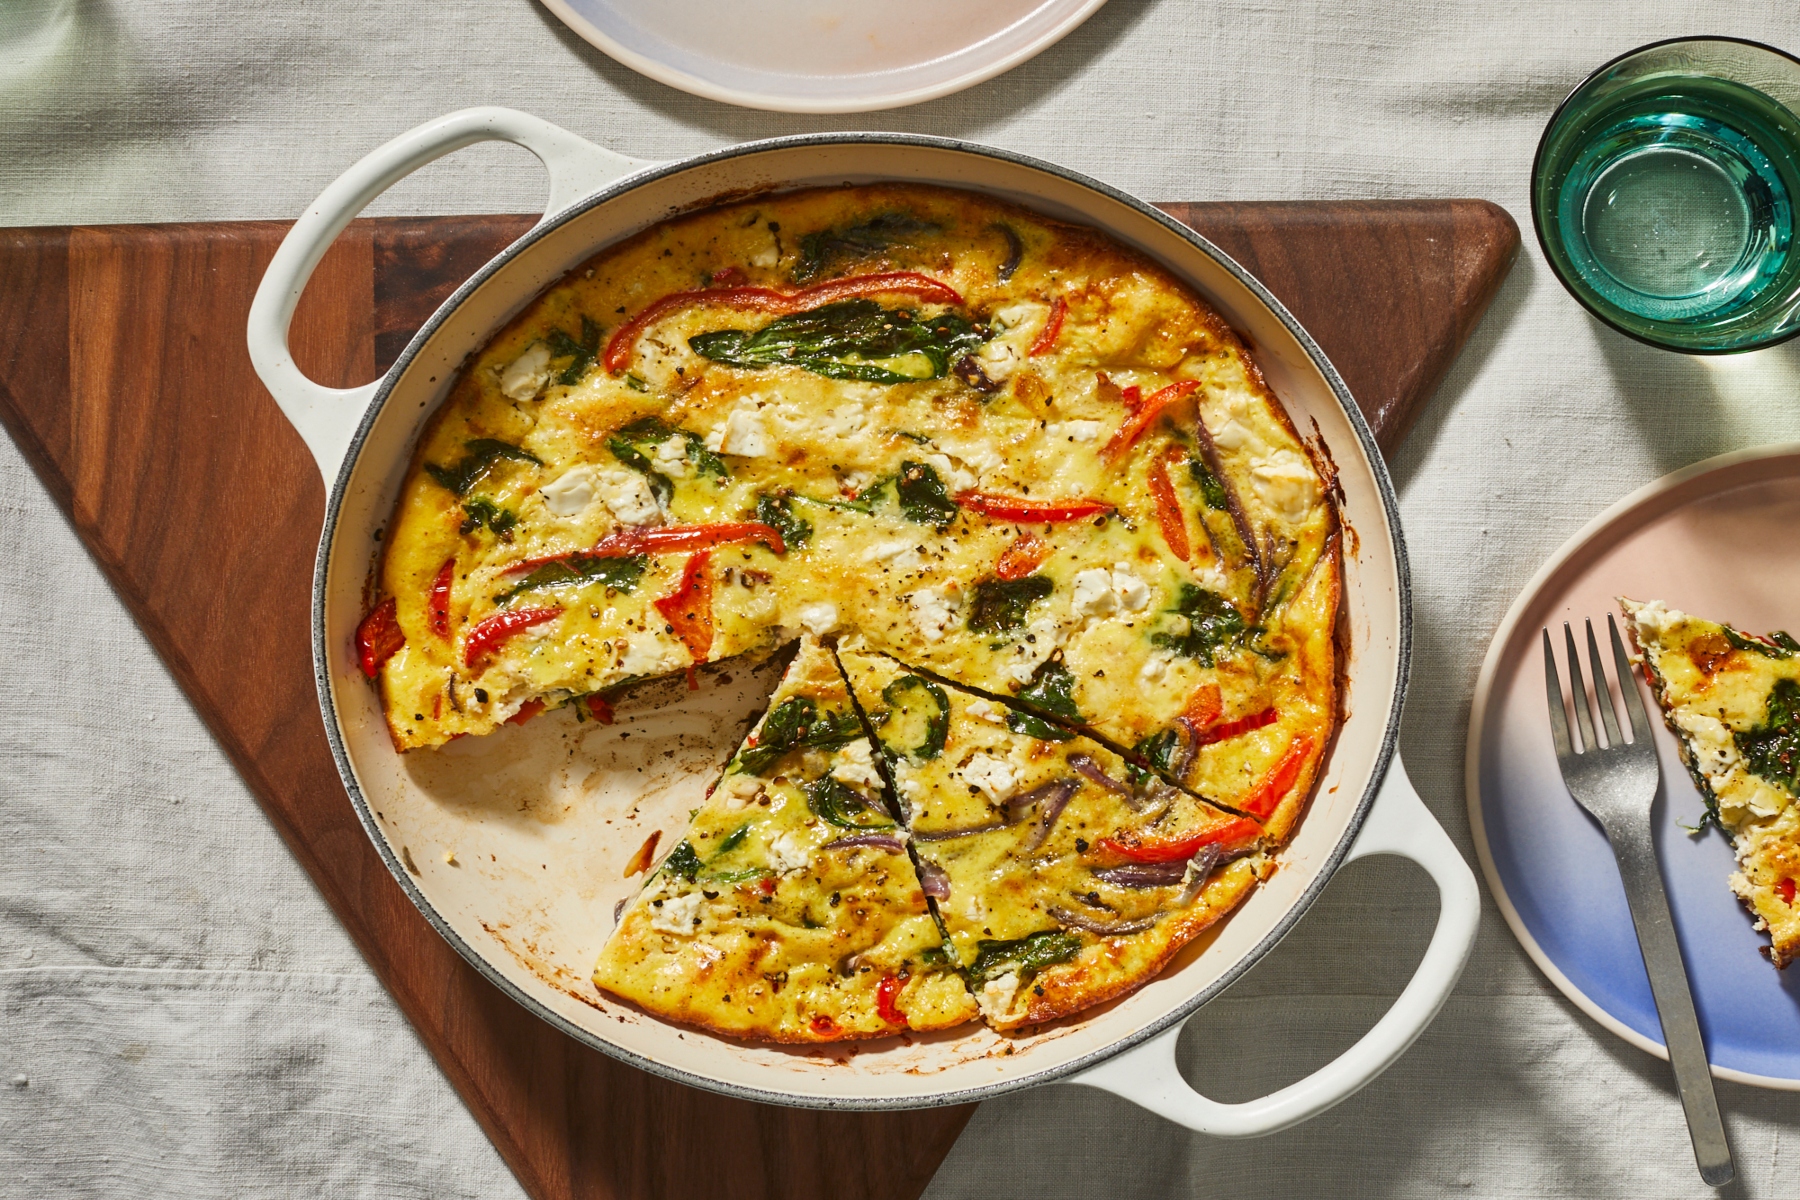 Φαγητό παρασκευή: Τι μπορείτε να φτιάξετε αν έχετε μόνο αυγά, αλεύρι, τομάτες, μπαχαρικά και πιπεριές;